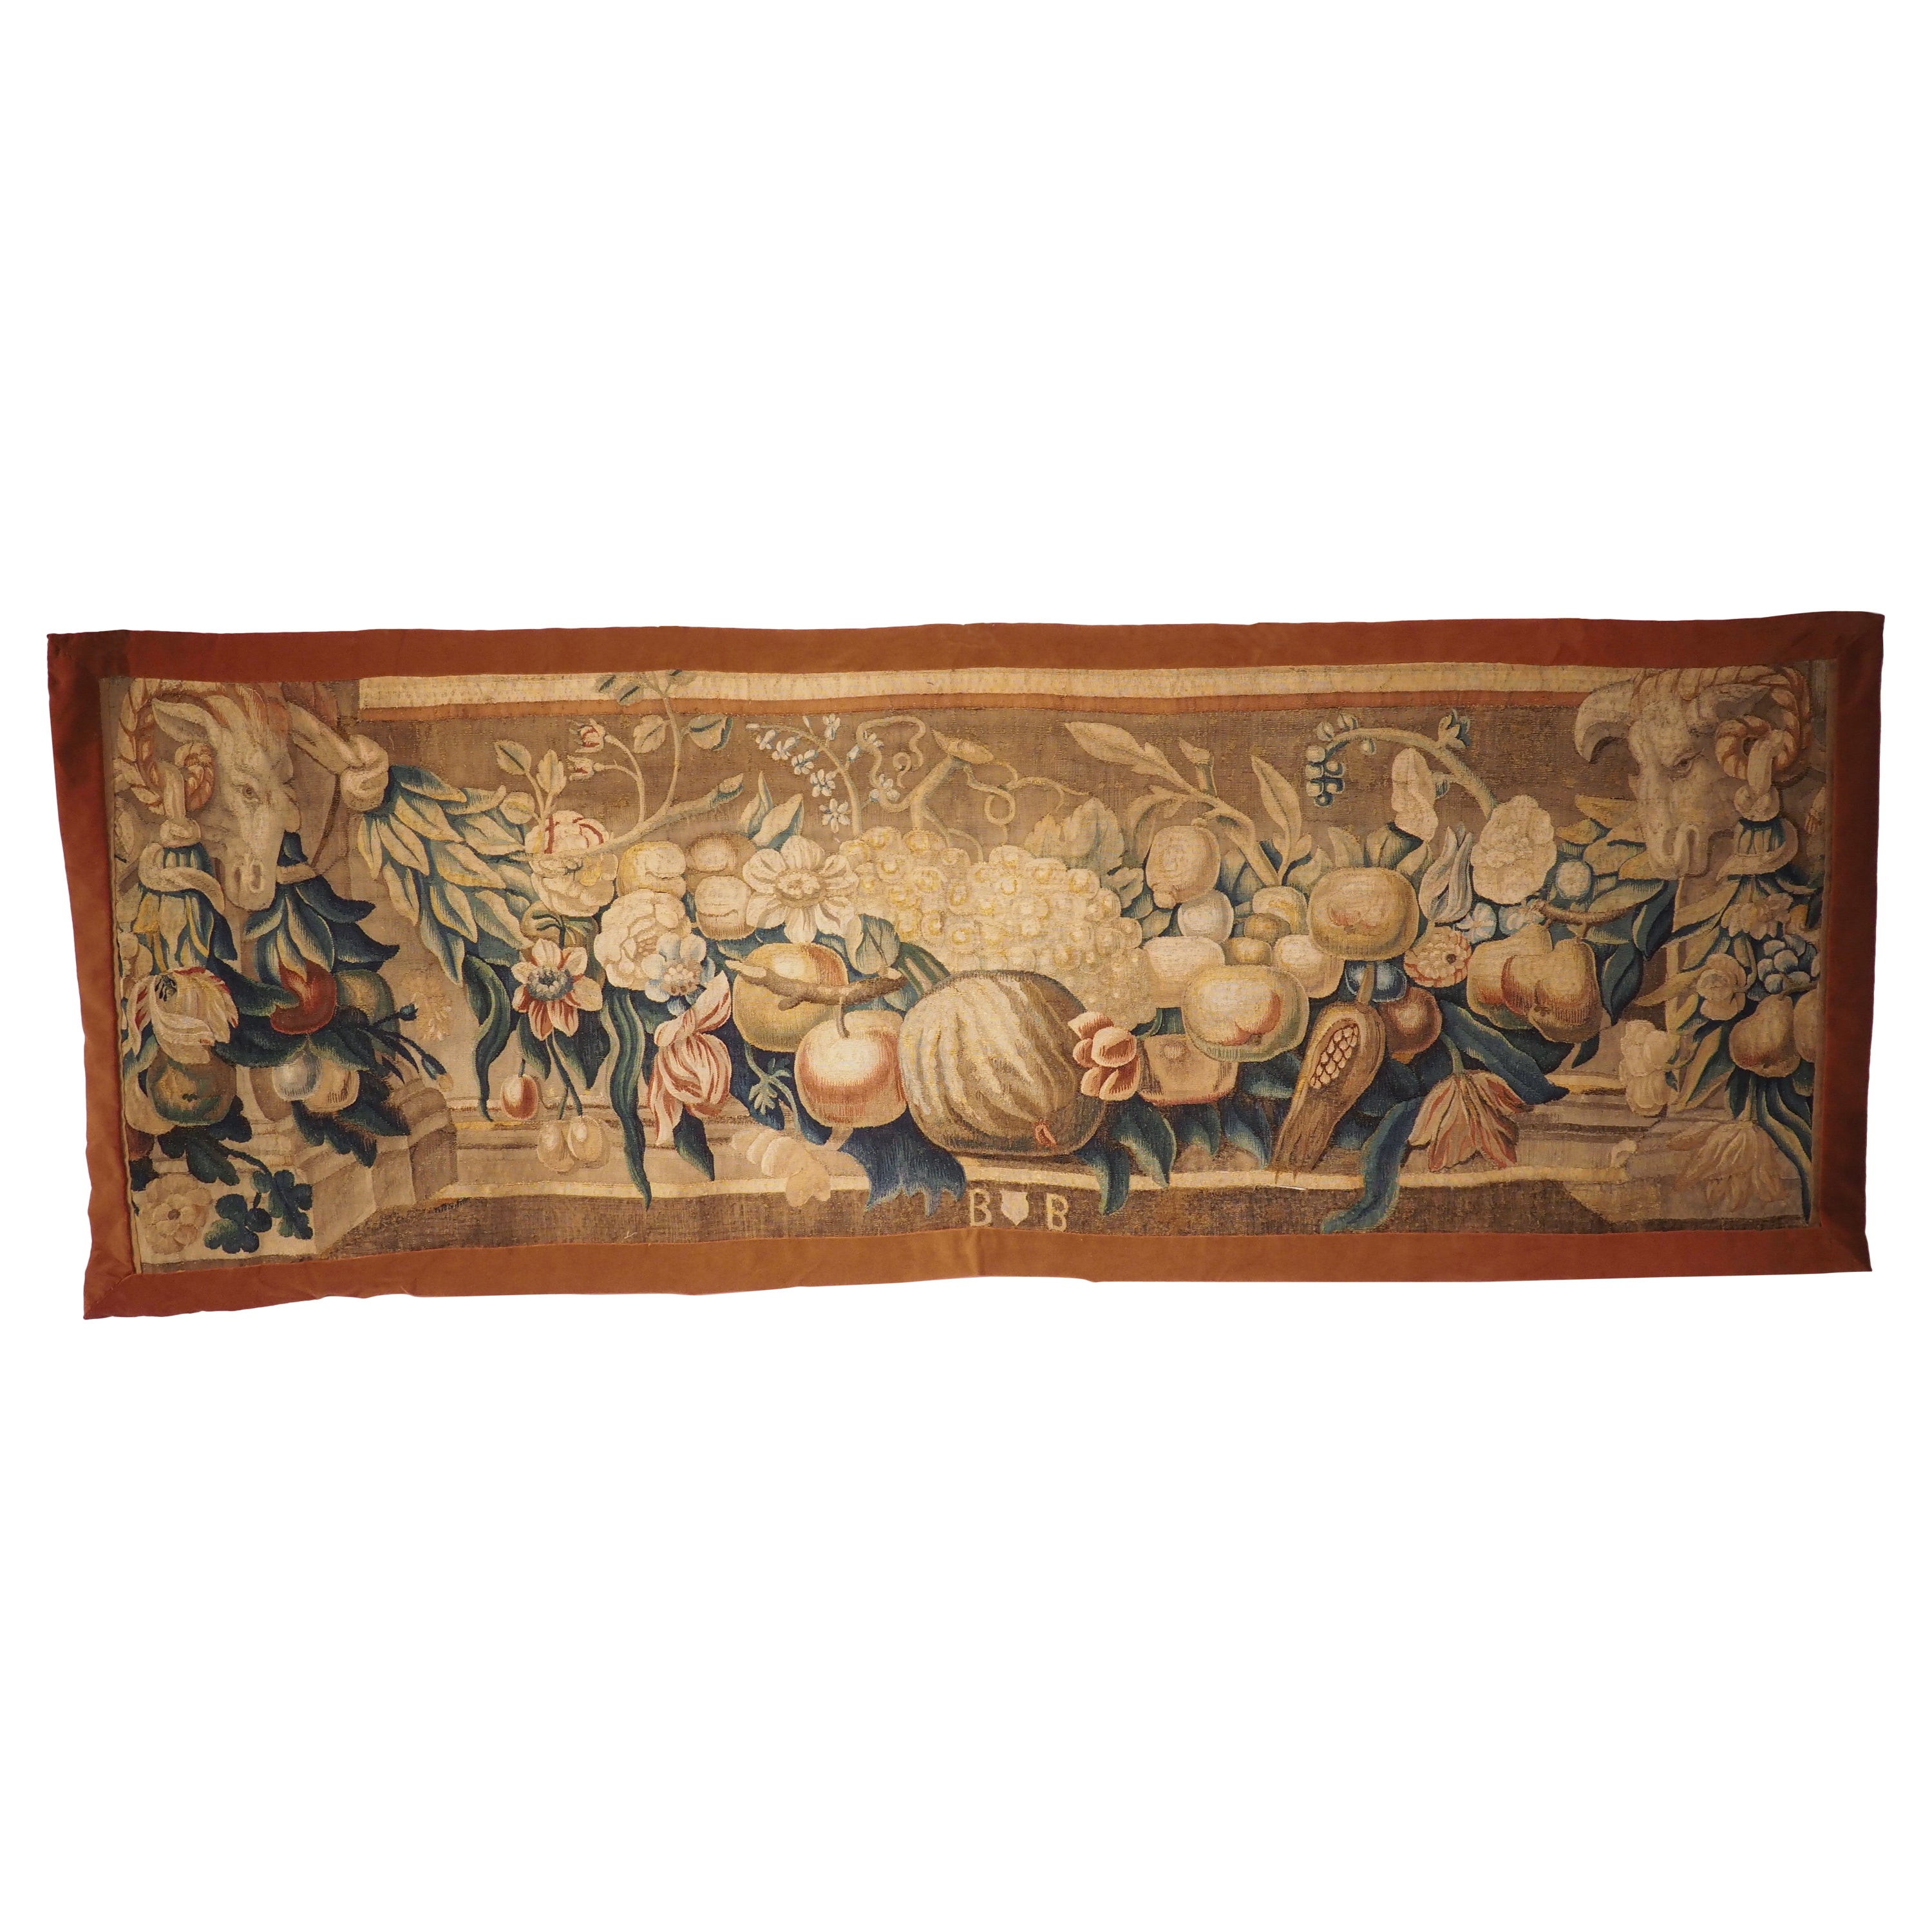 Fragment de tapisserie de Bruxelles du début du 18e siècle, Brabant, avec fougères et têtes de béliers